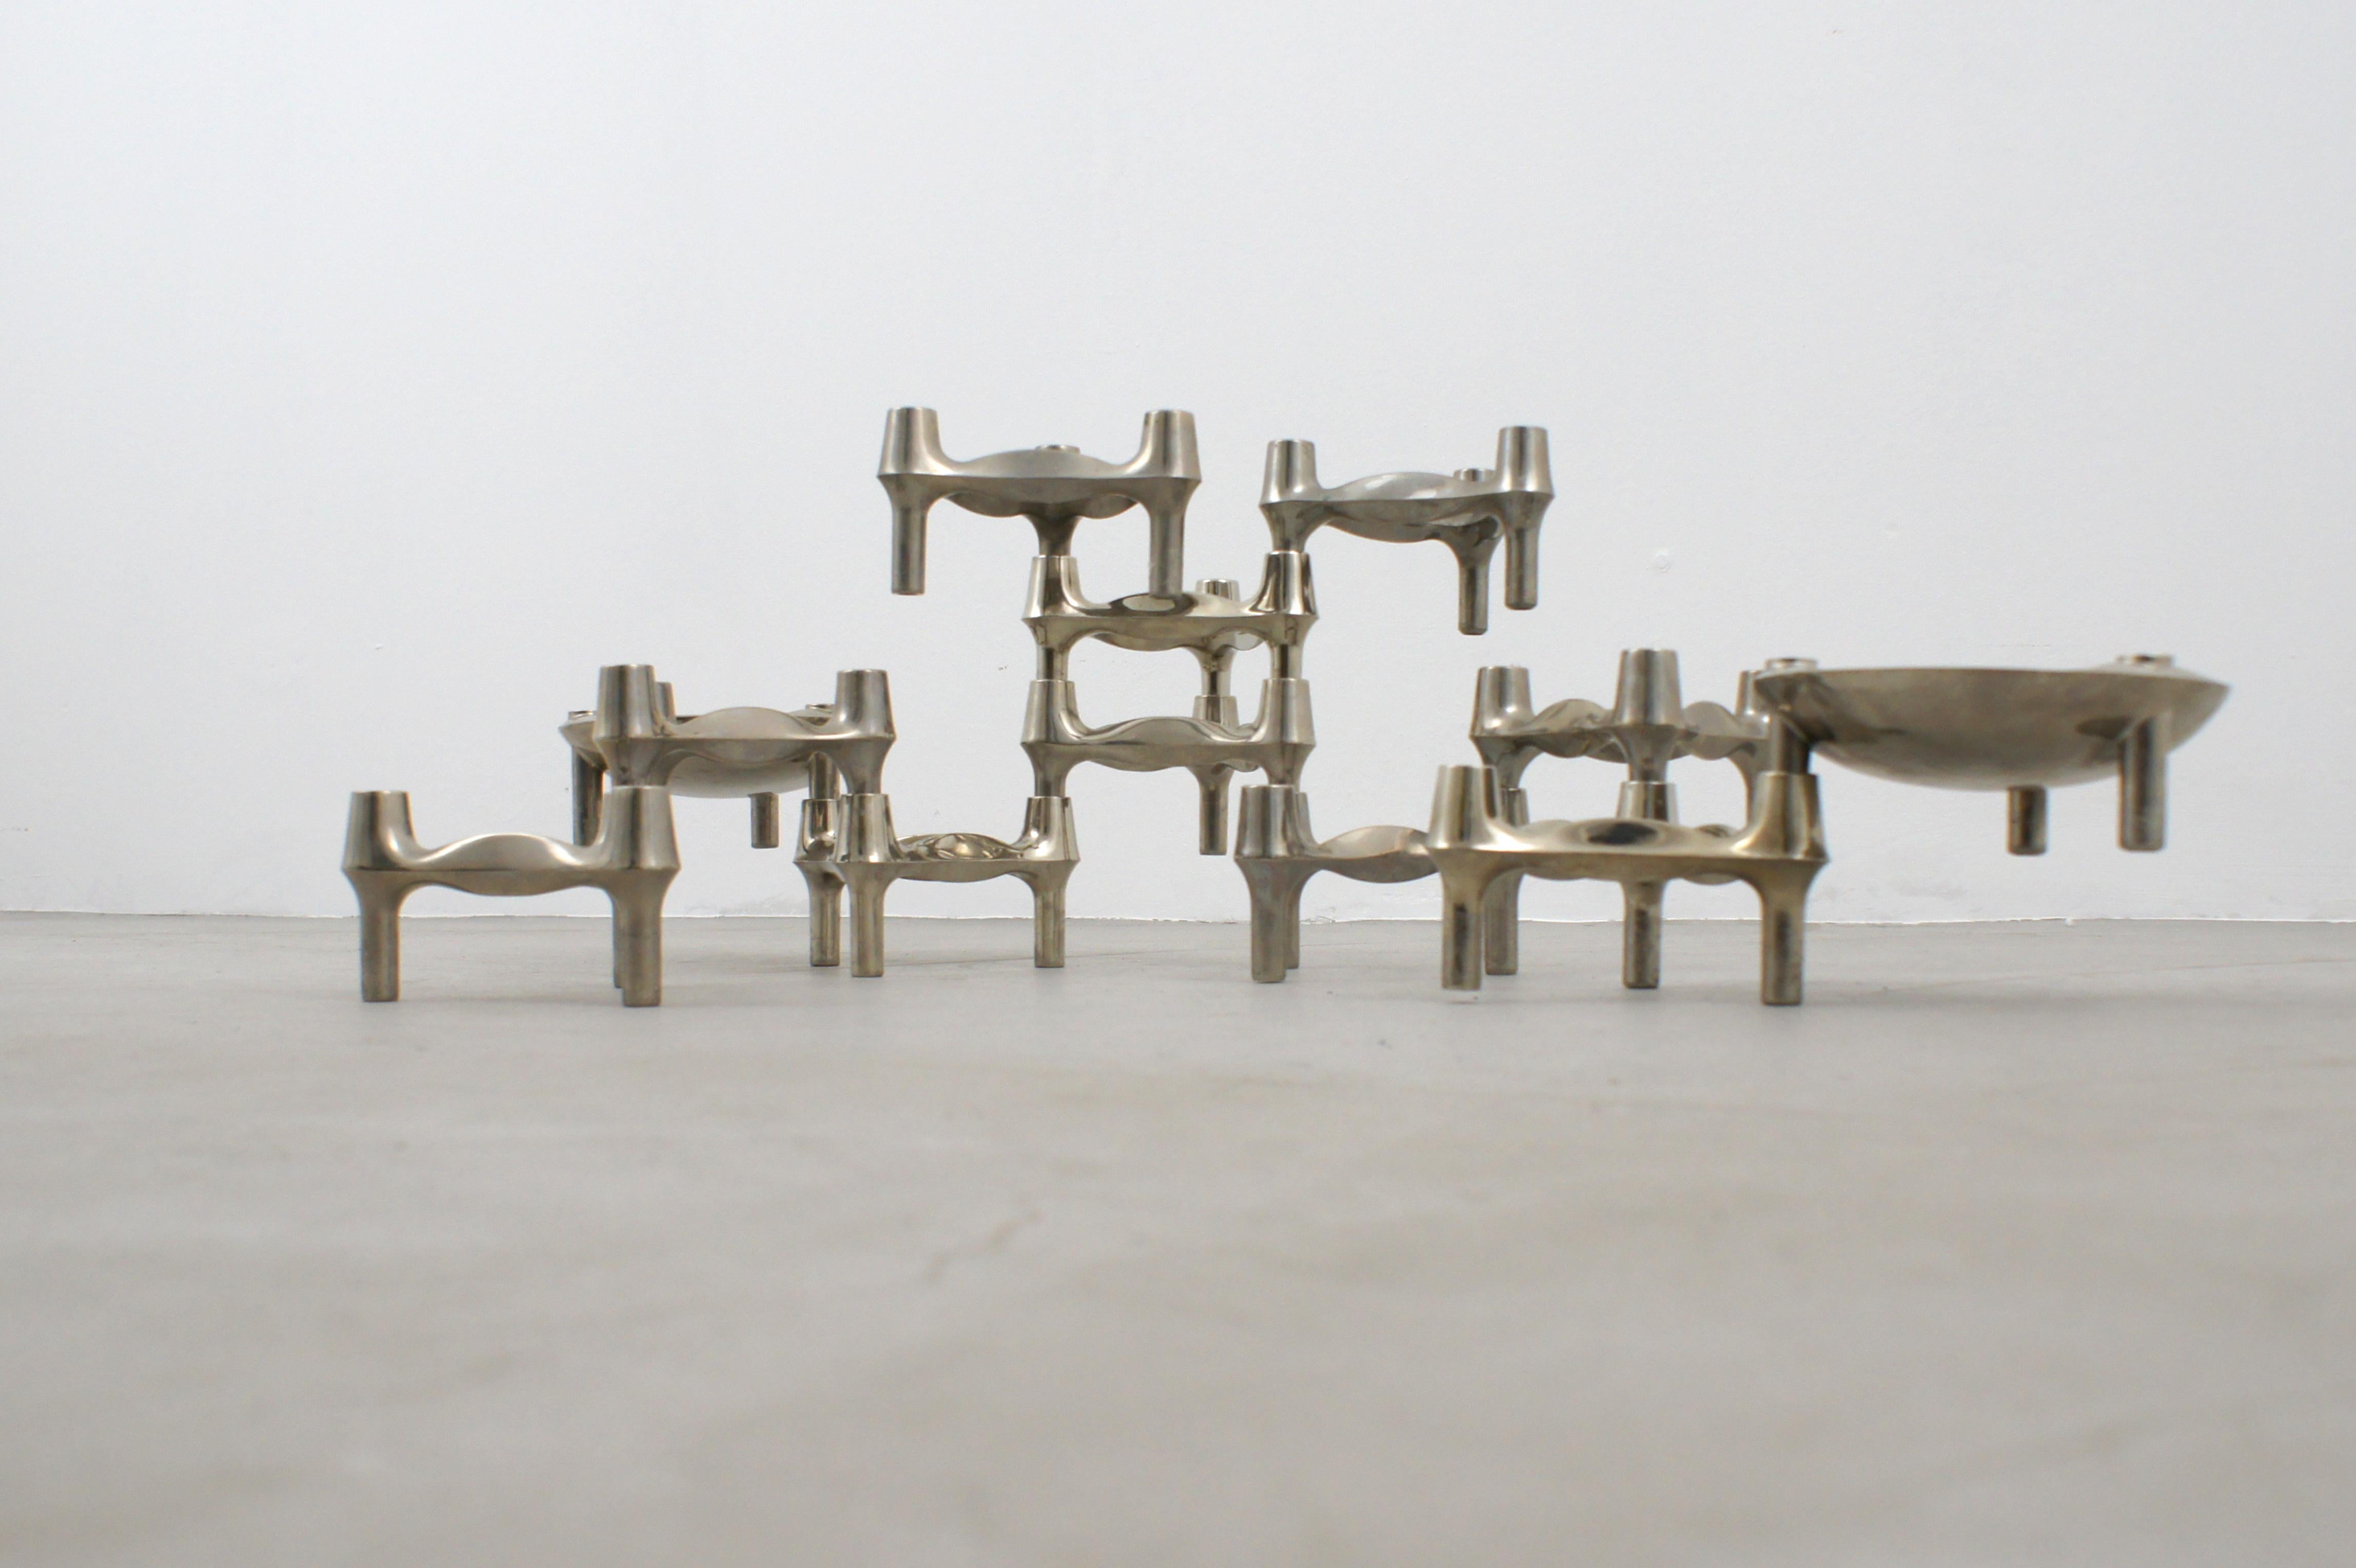 Ensemble de bougeoirs en métal galvanisé produits par BMF Nagel dans les années 1960 d'après un dessin de Fritz Nagel. 

Grâce à leur forme, les modules peuvent être assemblés sous de nombreuses formes pour créer un objet sculptural en constante